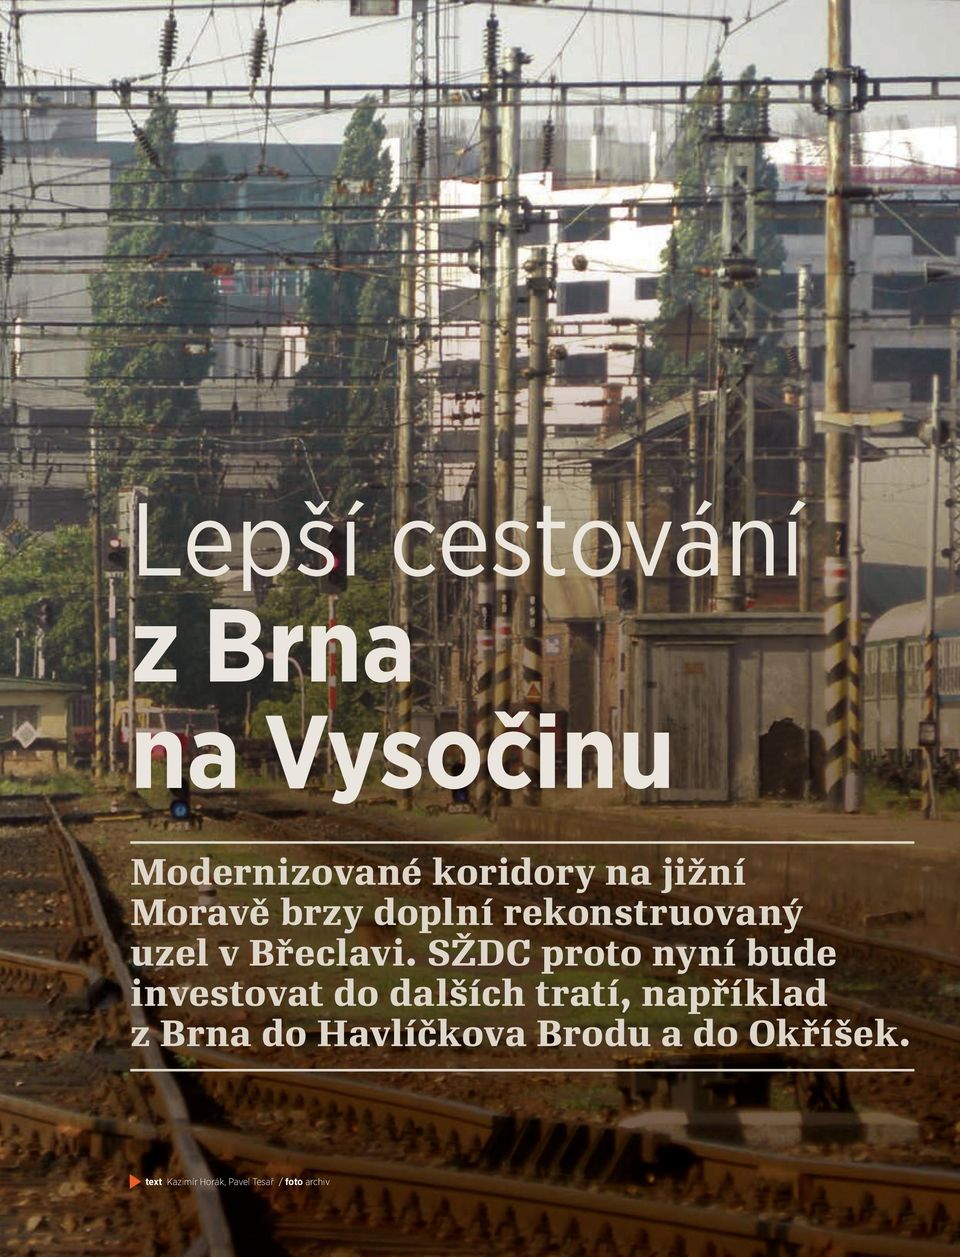 SŽDC proto nyní bude investovat do dalších tratí, například z Brna